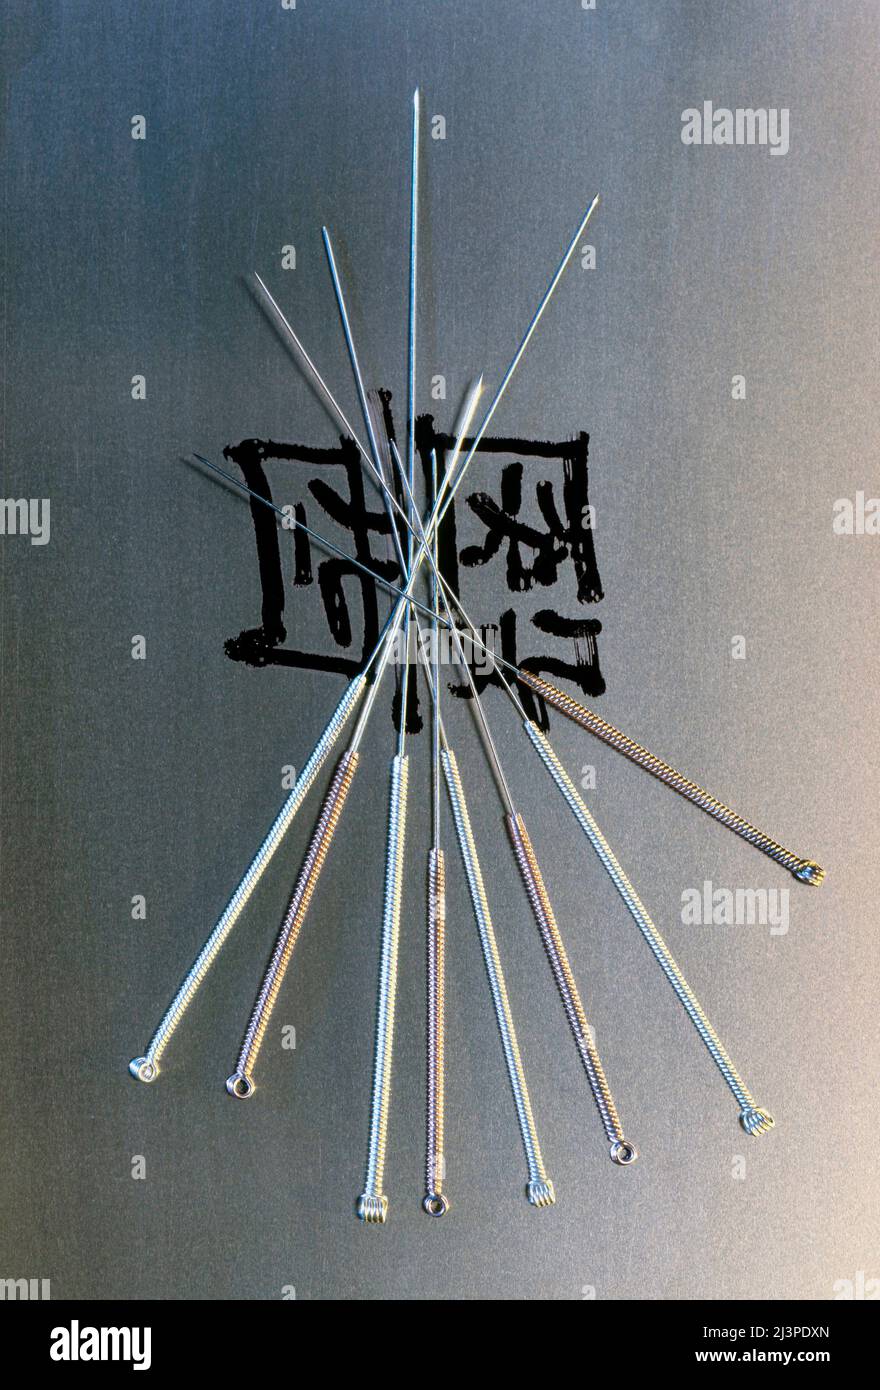 Agujas de acupuntura con caracteres chinos Foto de stock